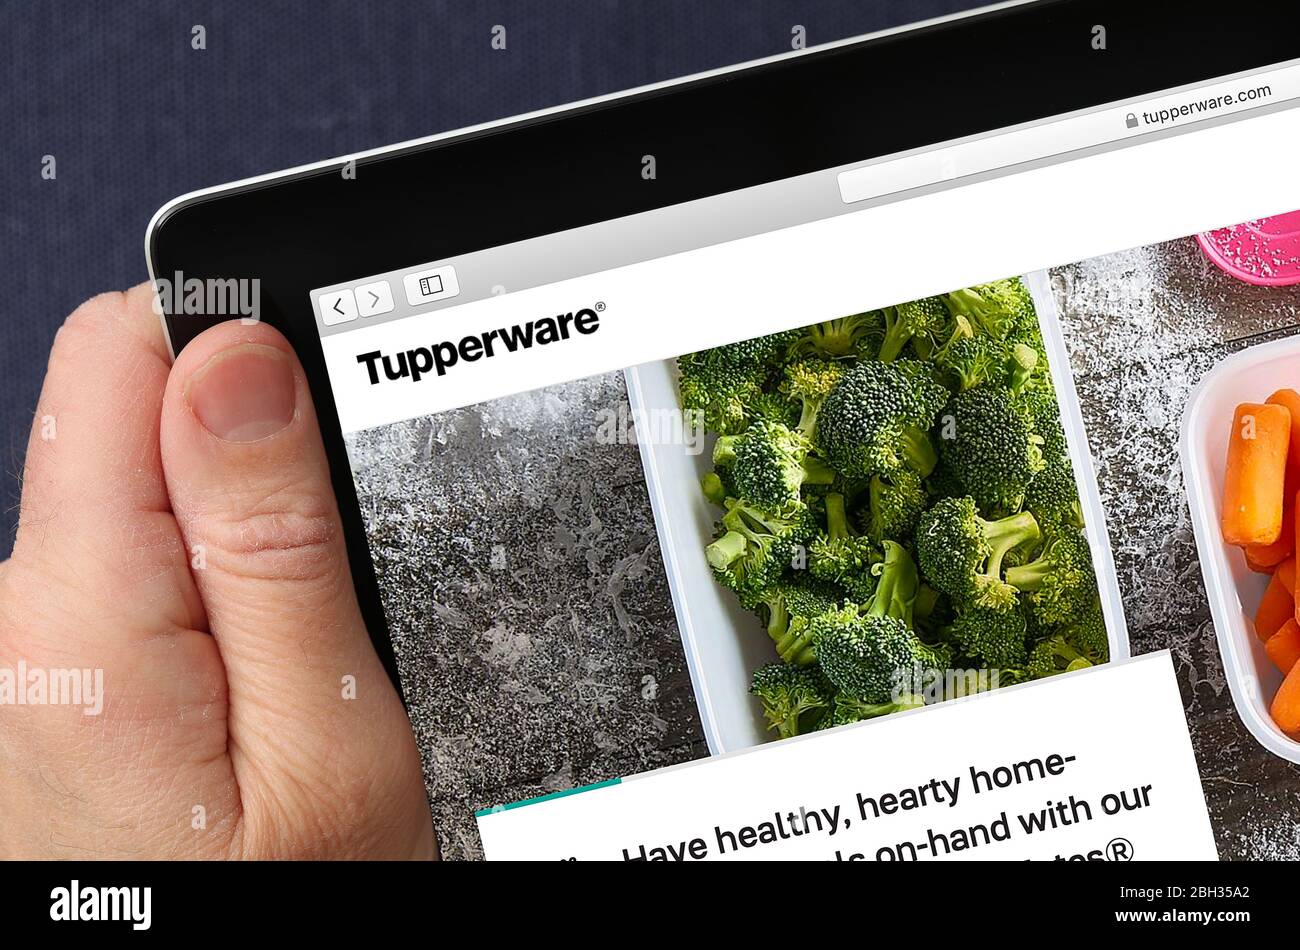 Site Web Tupperware affiché sur un iPad (usage éditorial uniquement) Banque D'Images